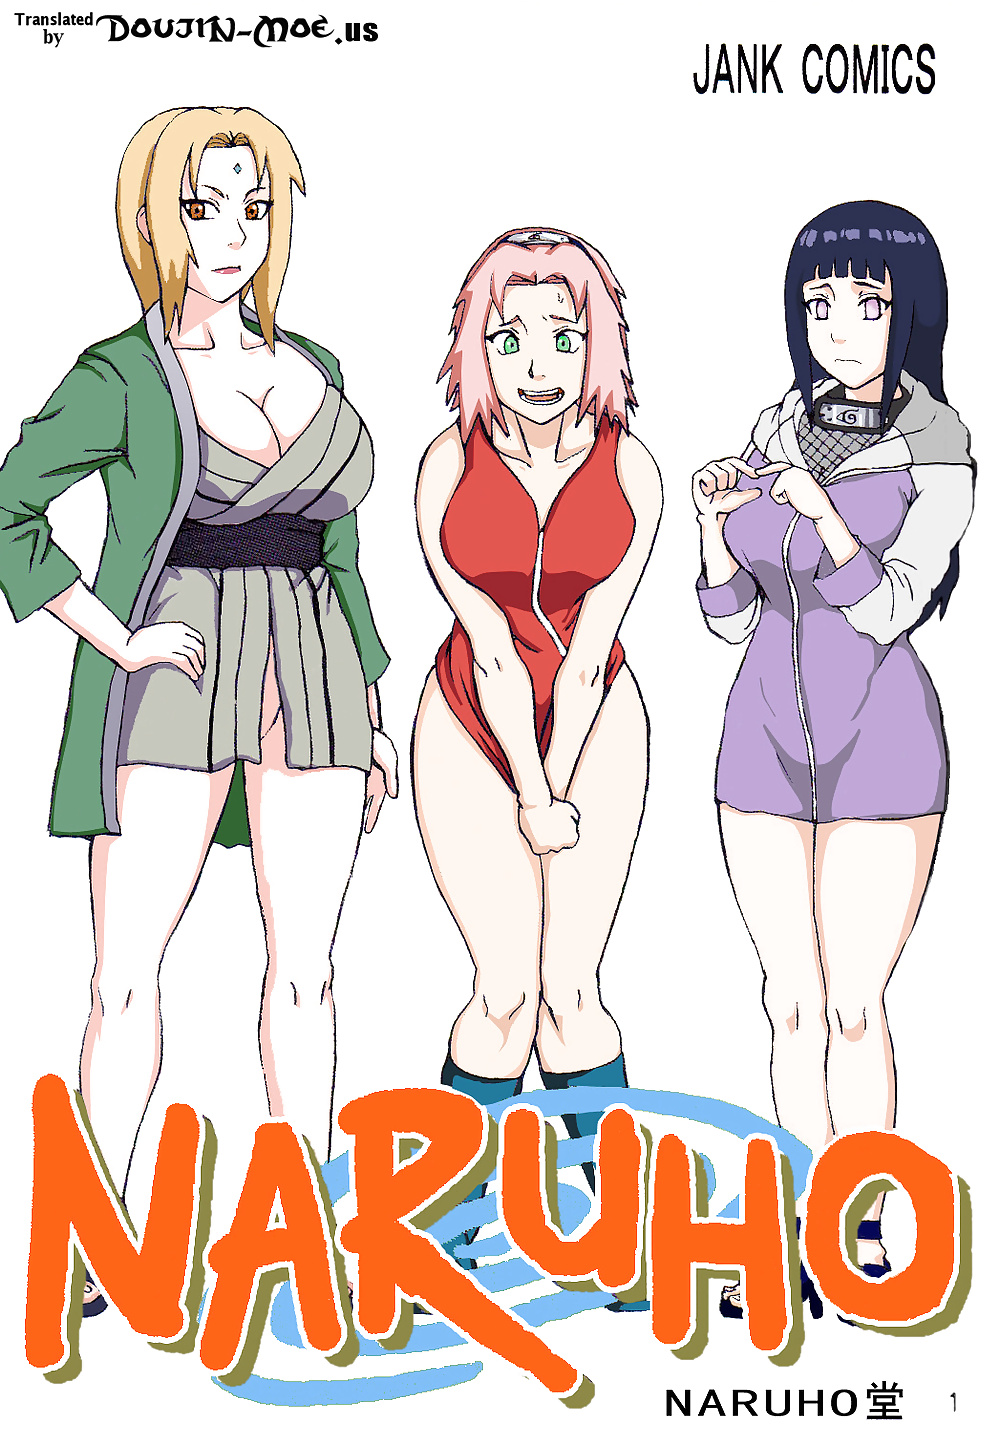 Naruto-tsunades Sexualtherapie Farbe Ger #25042353